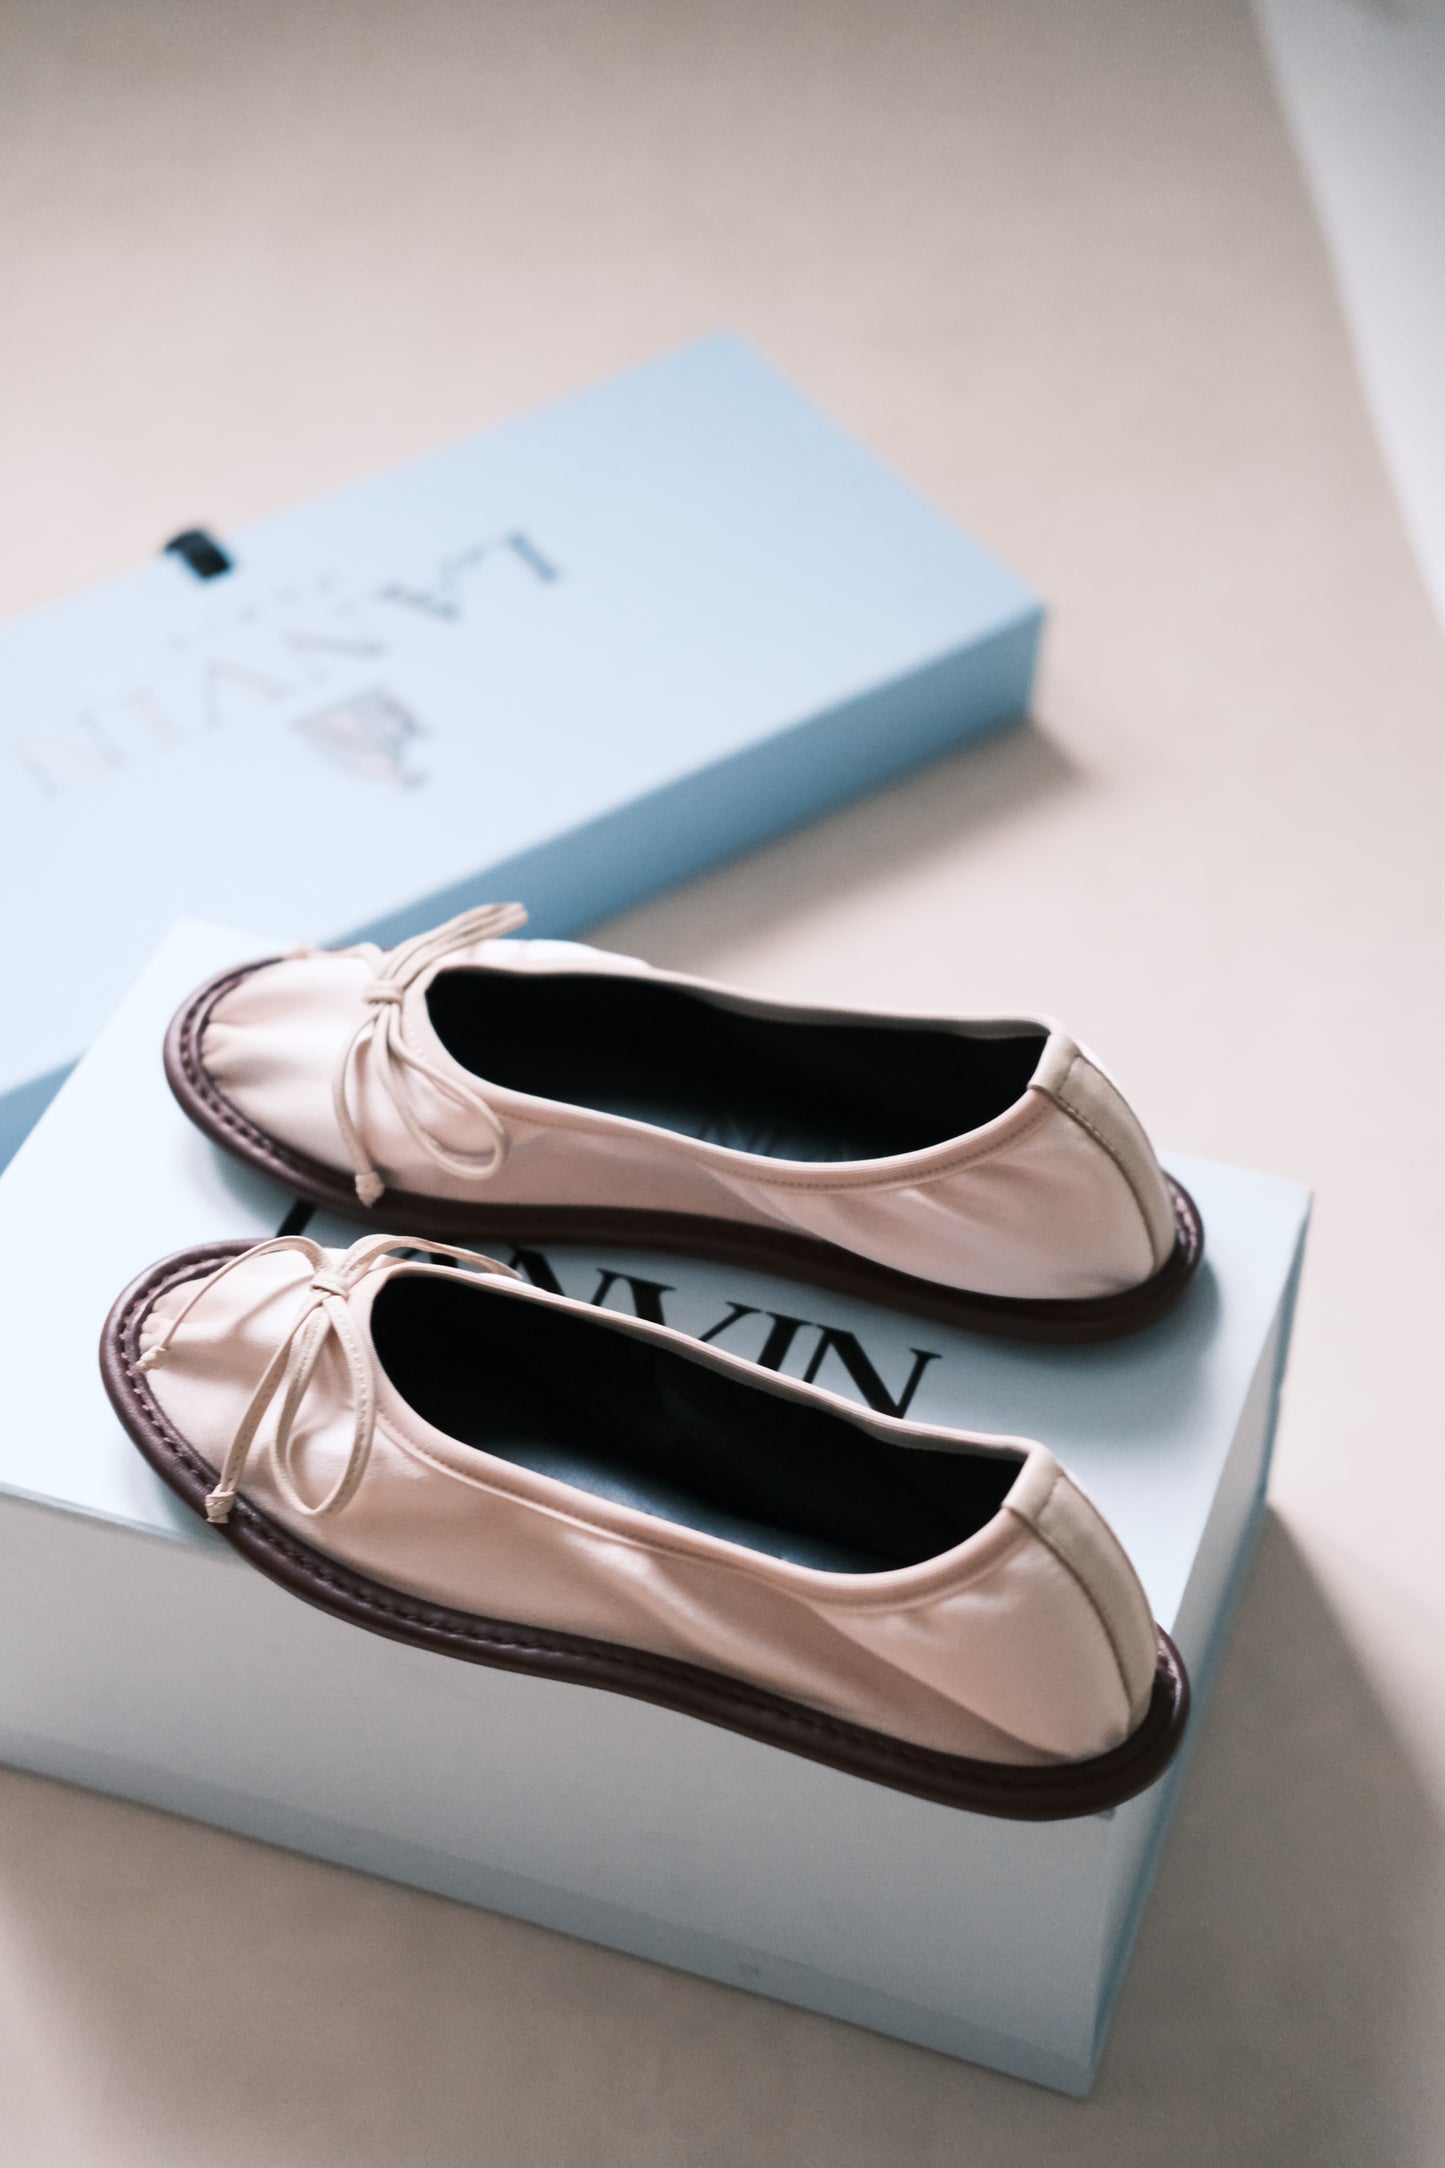 Lanvin ballet shoes